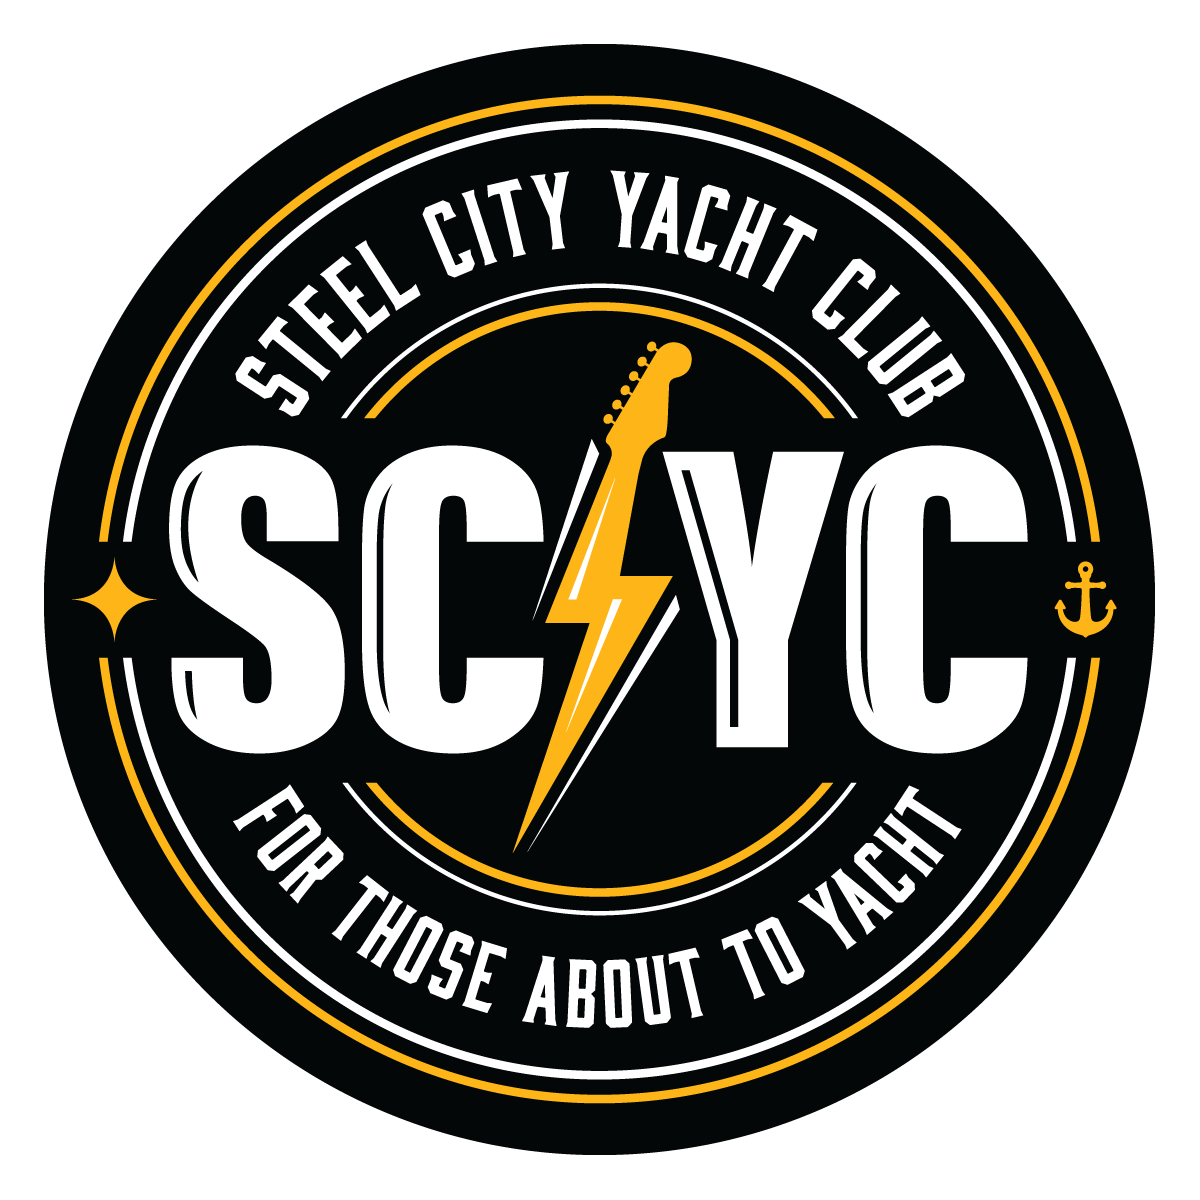 Steel City Yacht Club